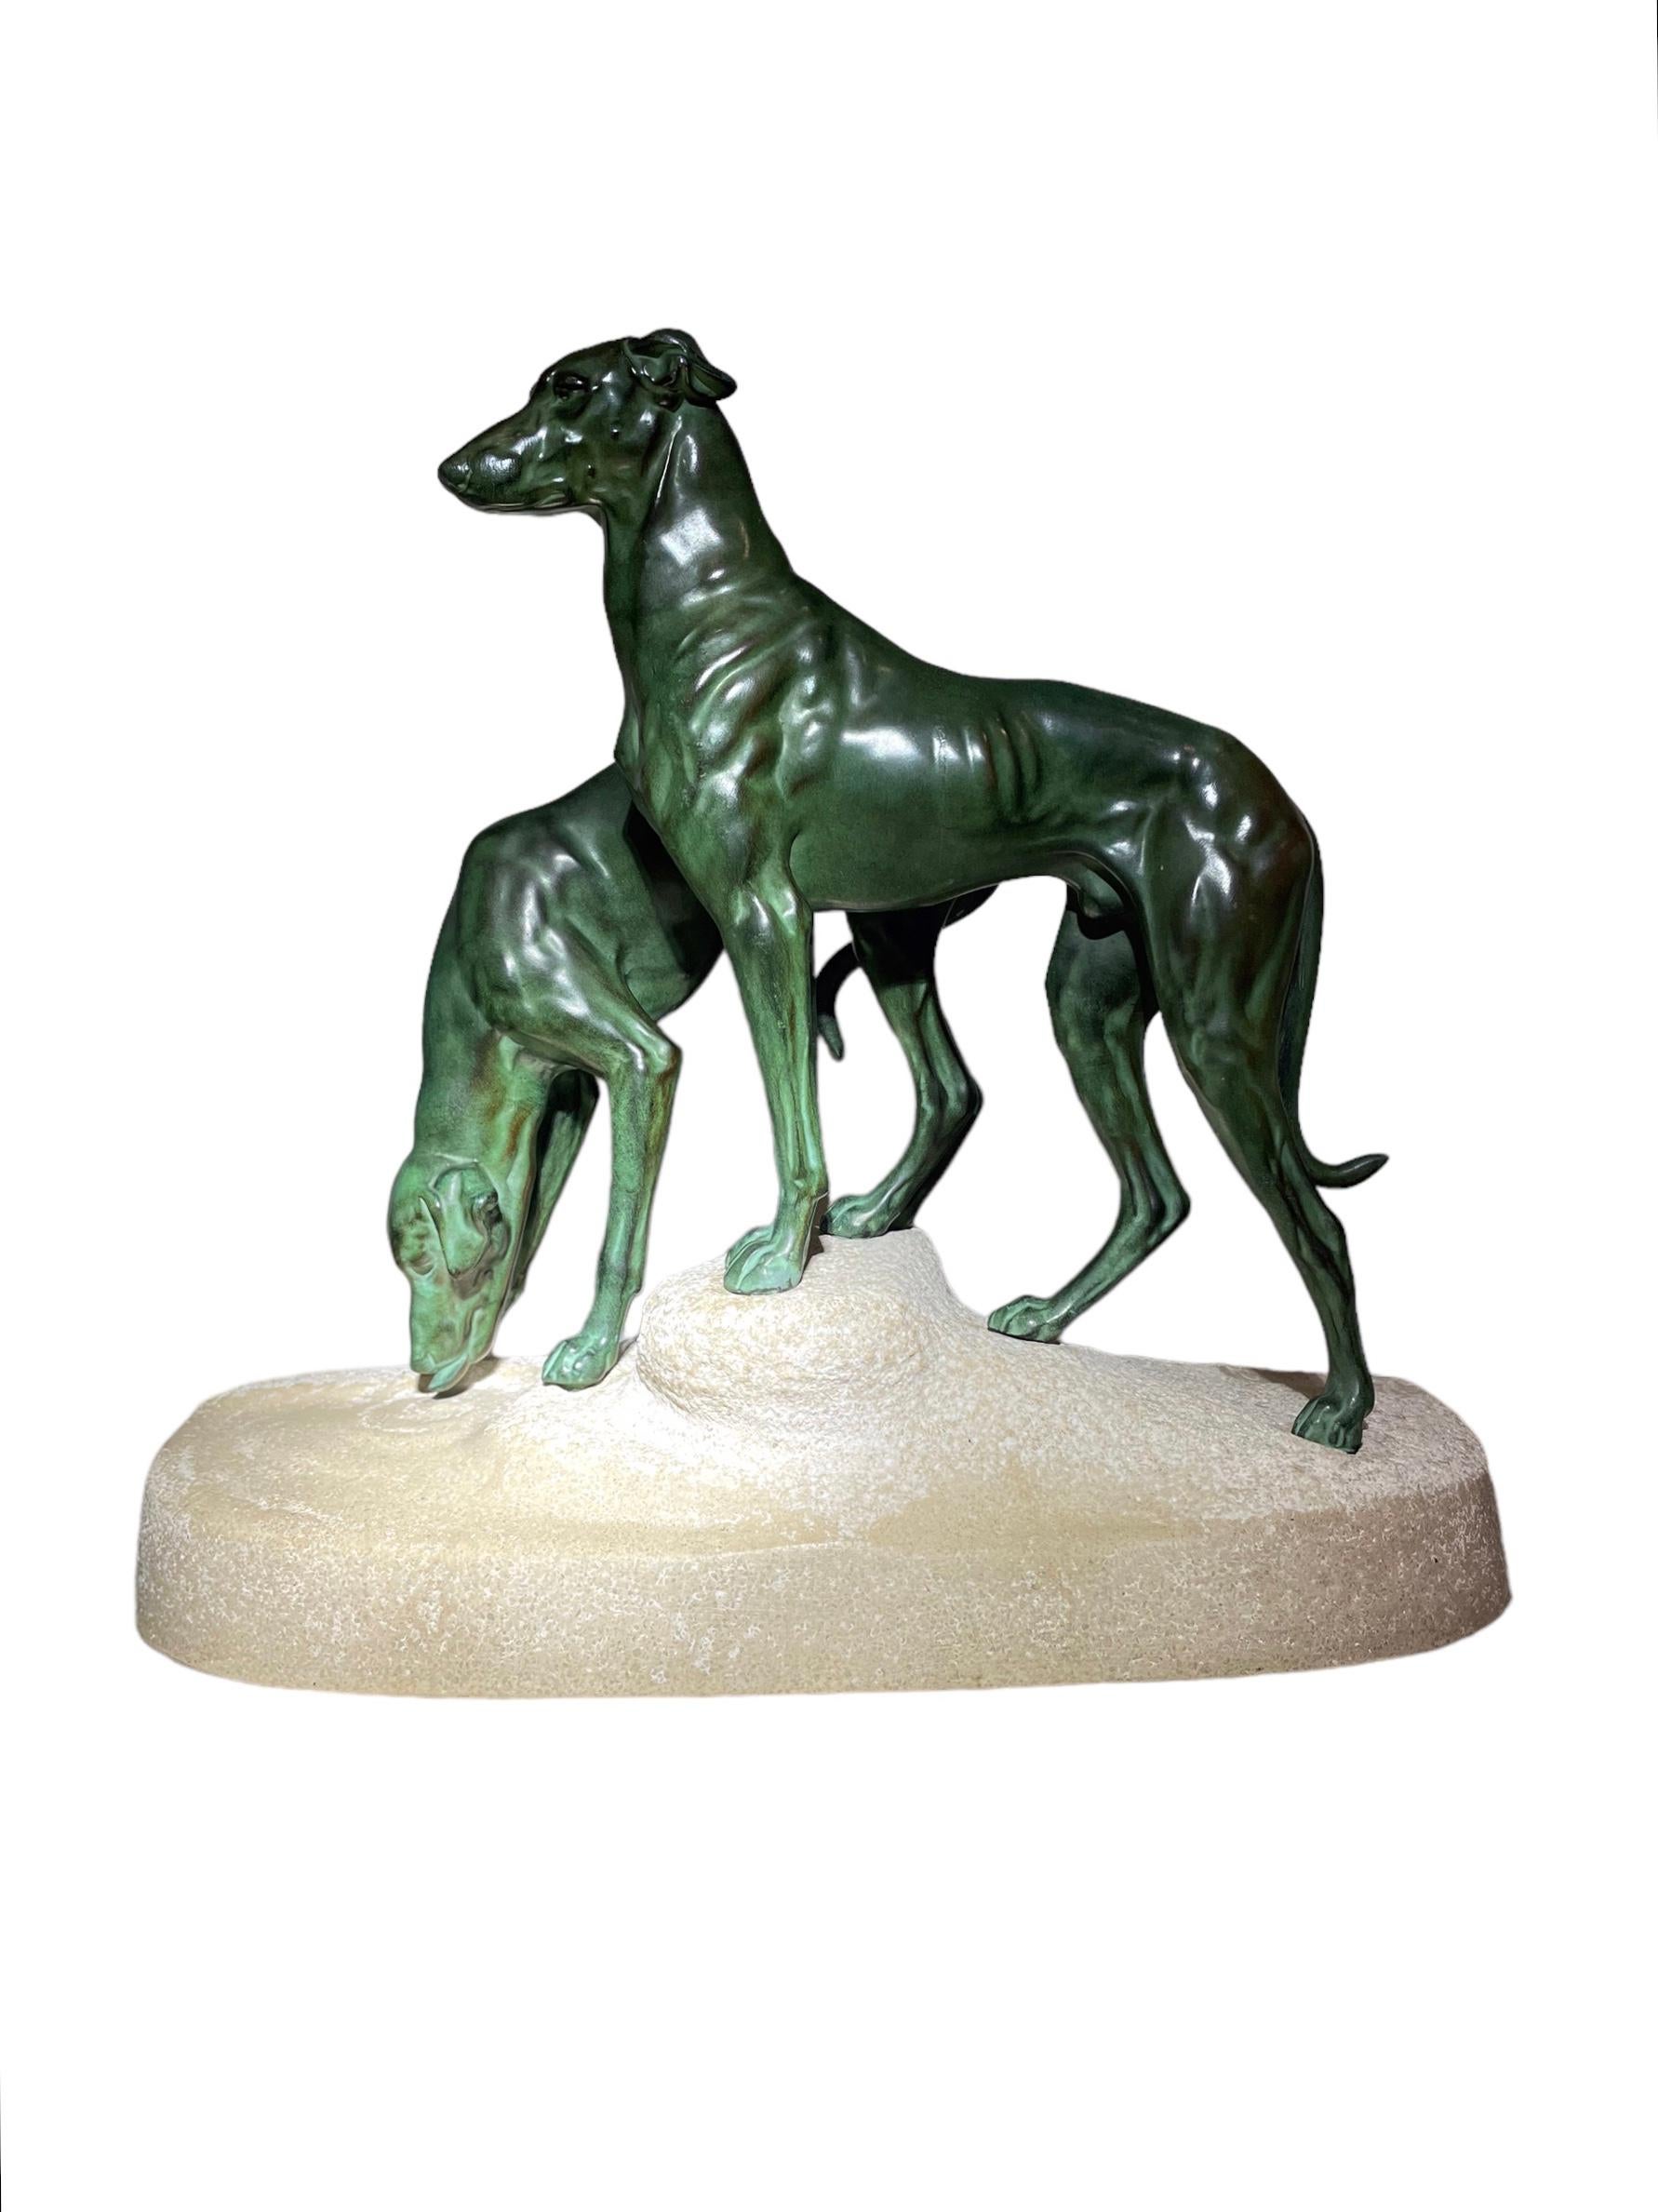 Cette sculpture d'époque Art déco de deux chiens courants en métal, dont l'un est debout tandis que l'autre boit dans un bassin d'eau, est posée sur un socle en grès naturaliste, conçu et créé par le célèbre sculpteur animalier Jules-Edmond Masson